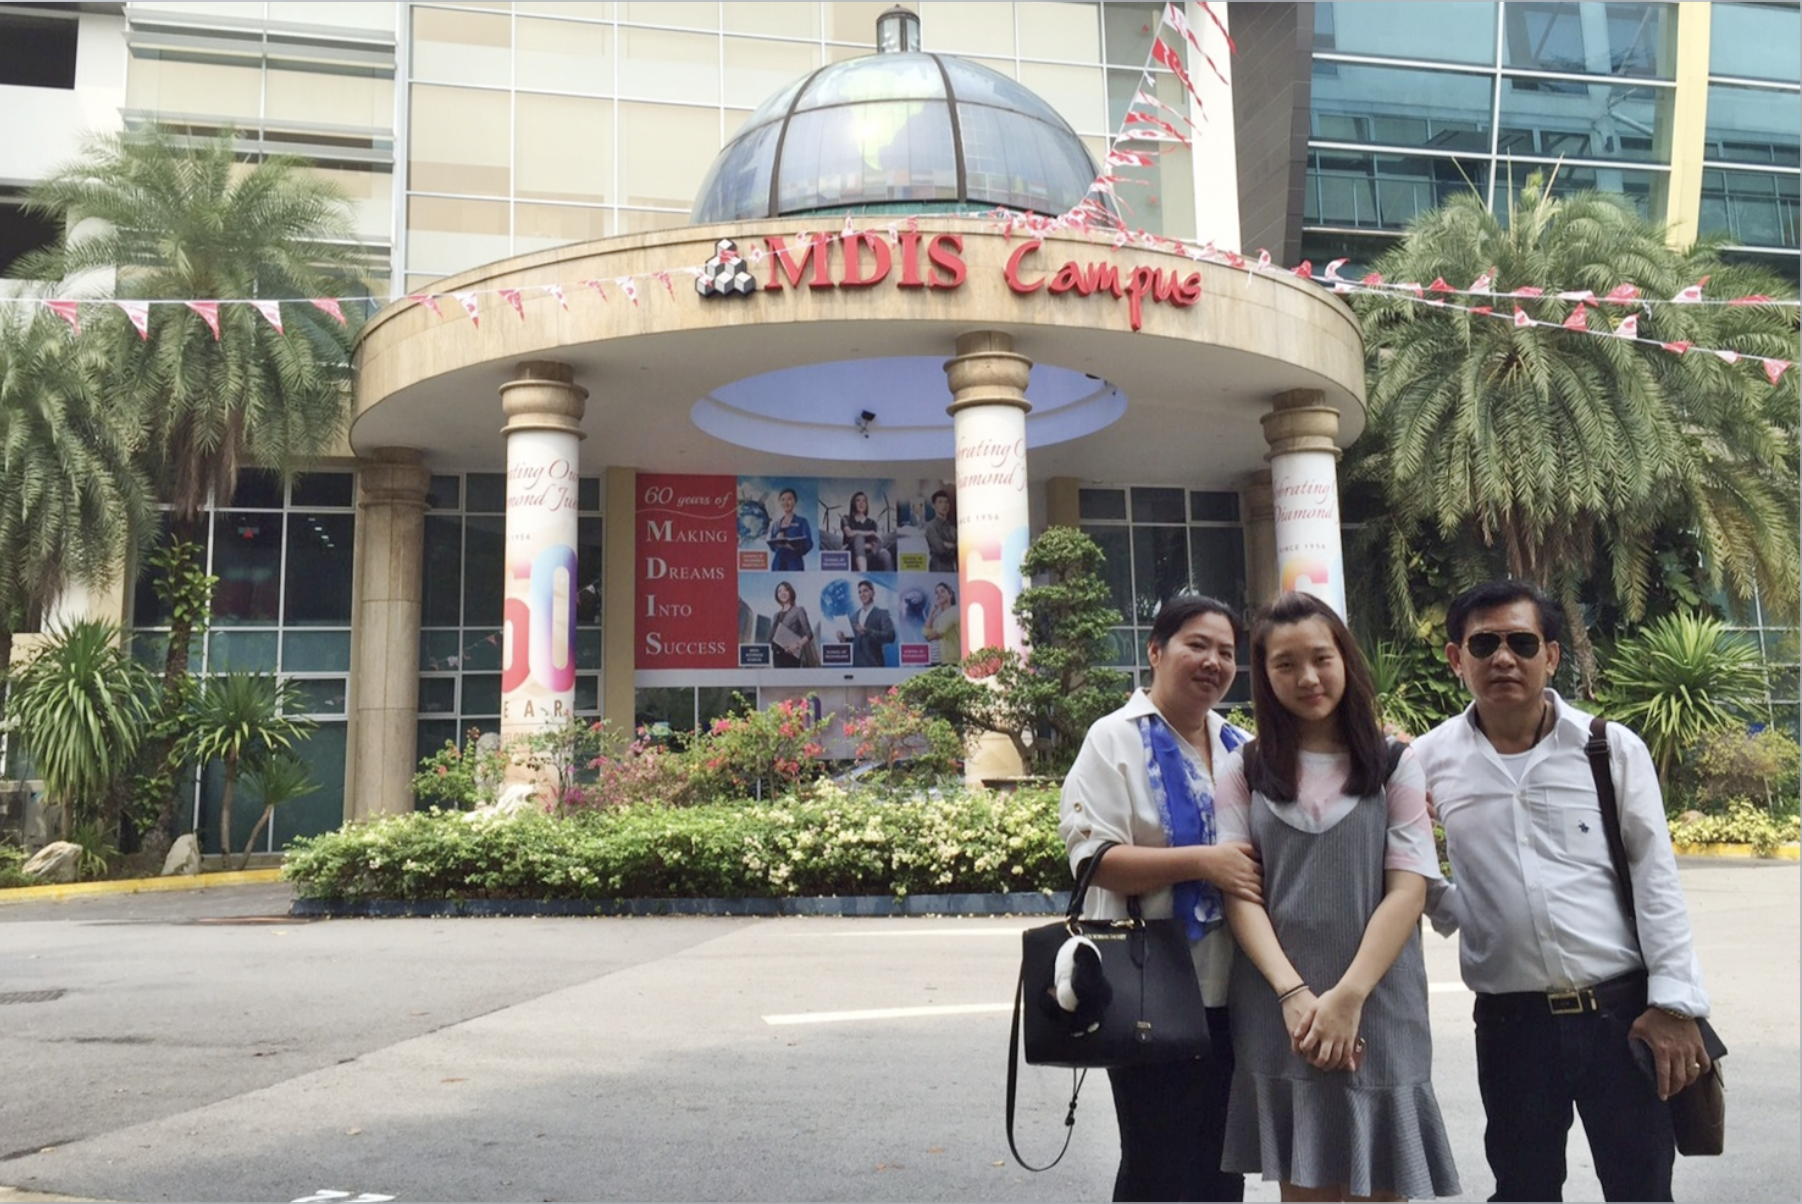 รีวิว MDIS น้องมายด์ ไปเรียนปริญญาตรีที่สถาบัน MDIS, Singapore